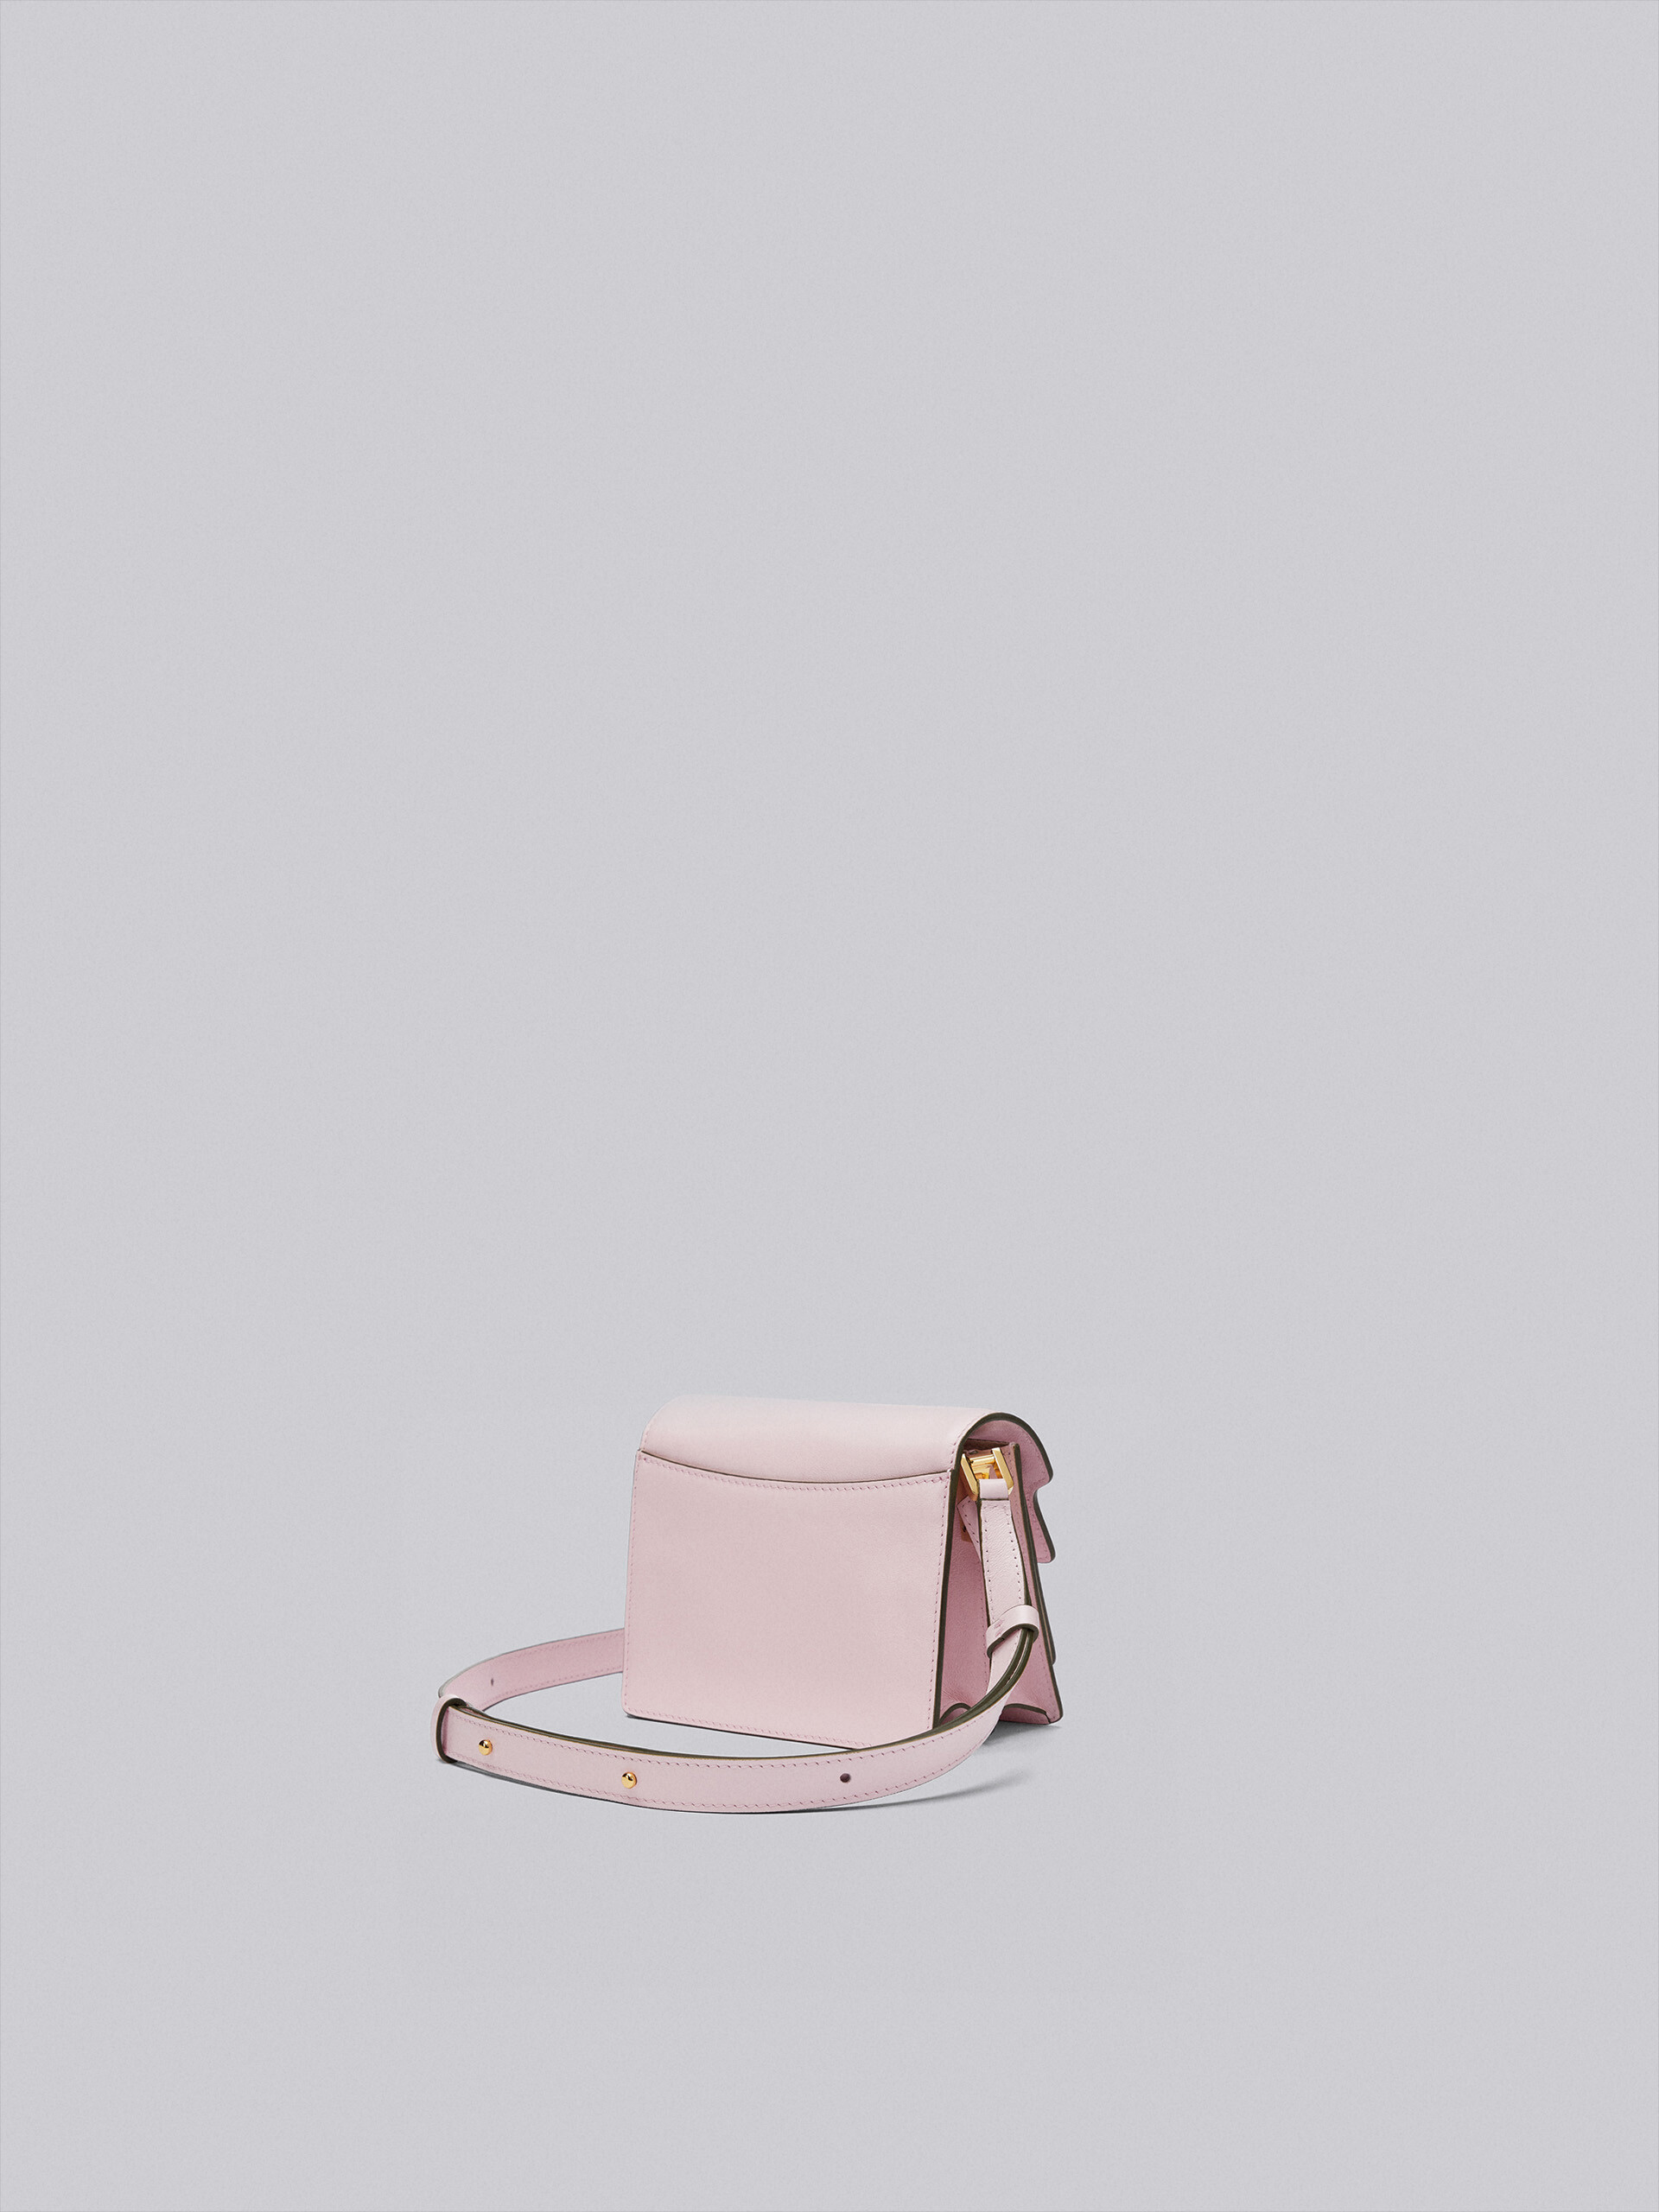 TRUNK SOFT bag mini in pelle rosa - Borse a spalla - Image 2